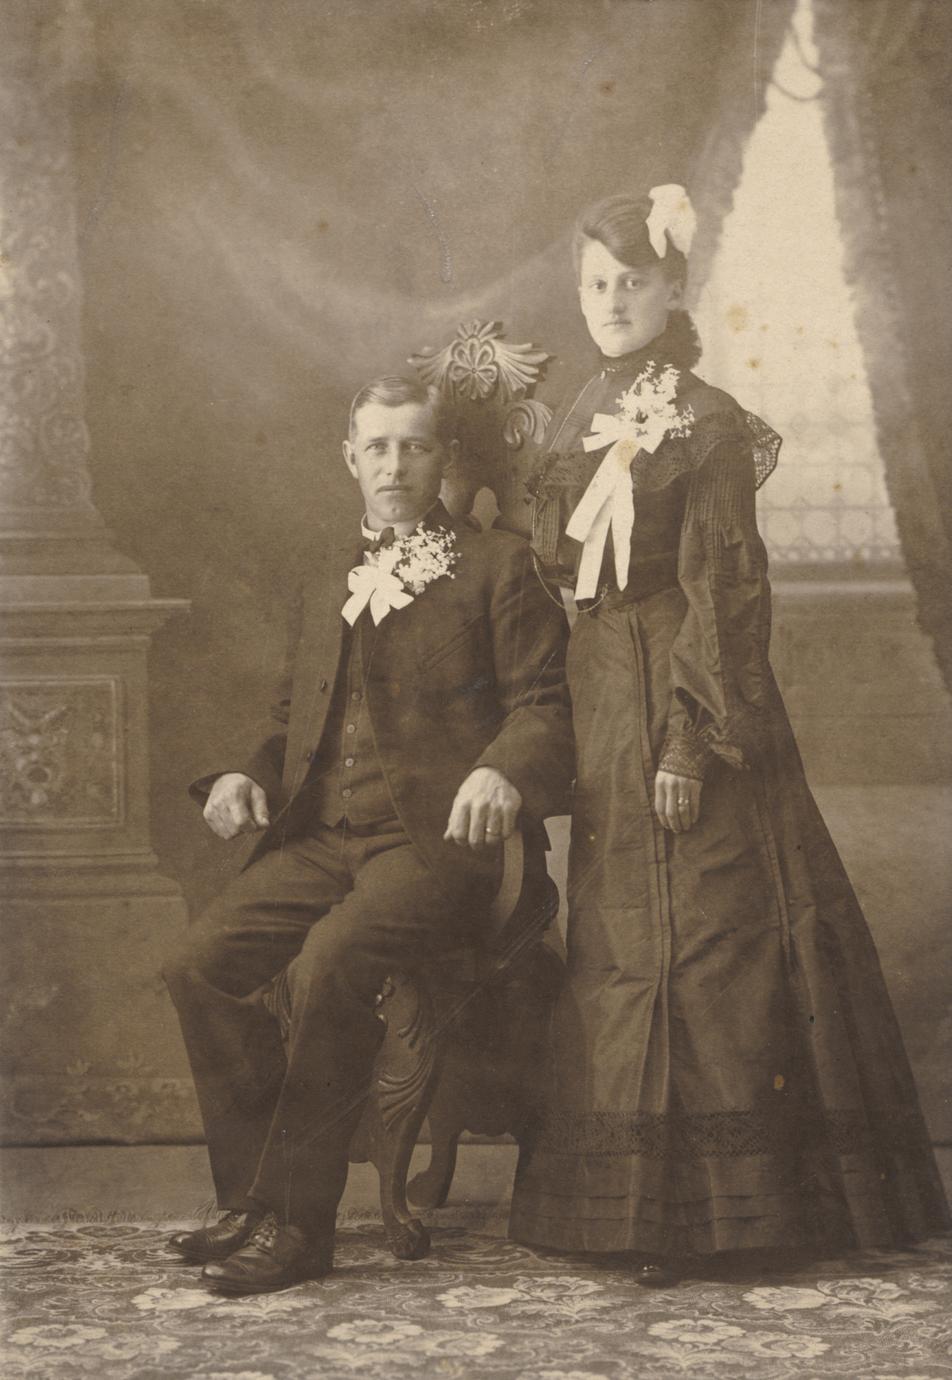 Jacob Frick and Amalia Tschudy Frick wedding portrait